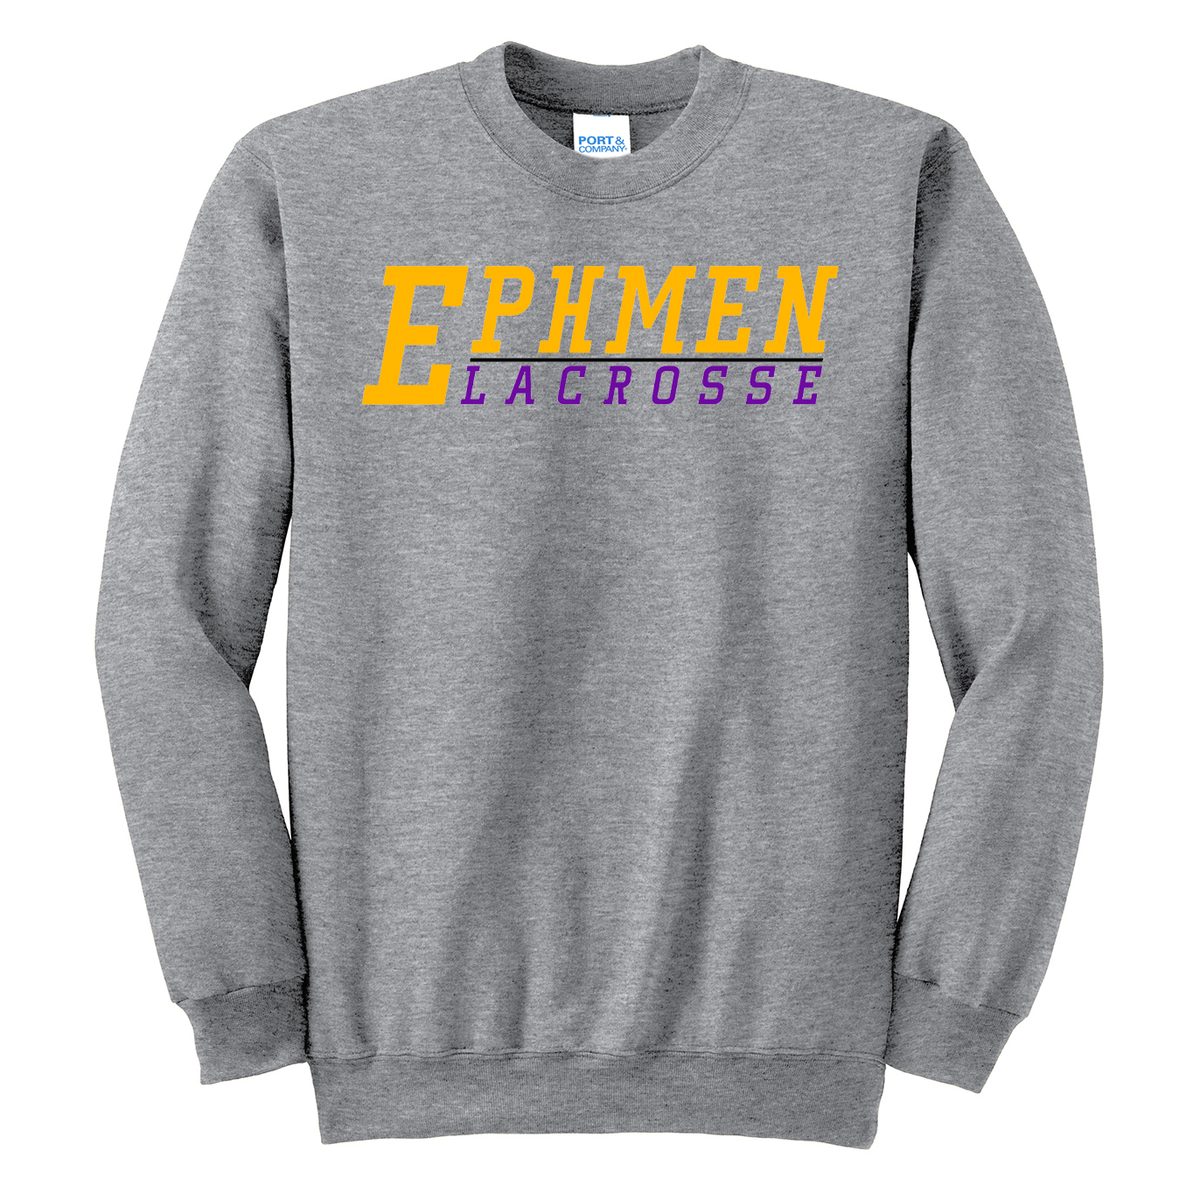 Ephmen Lacrosse Crew Neck Sweater